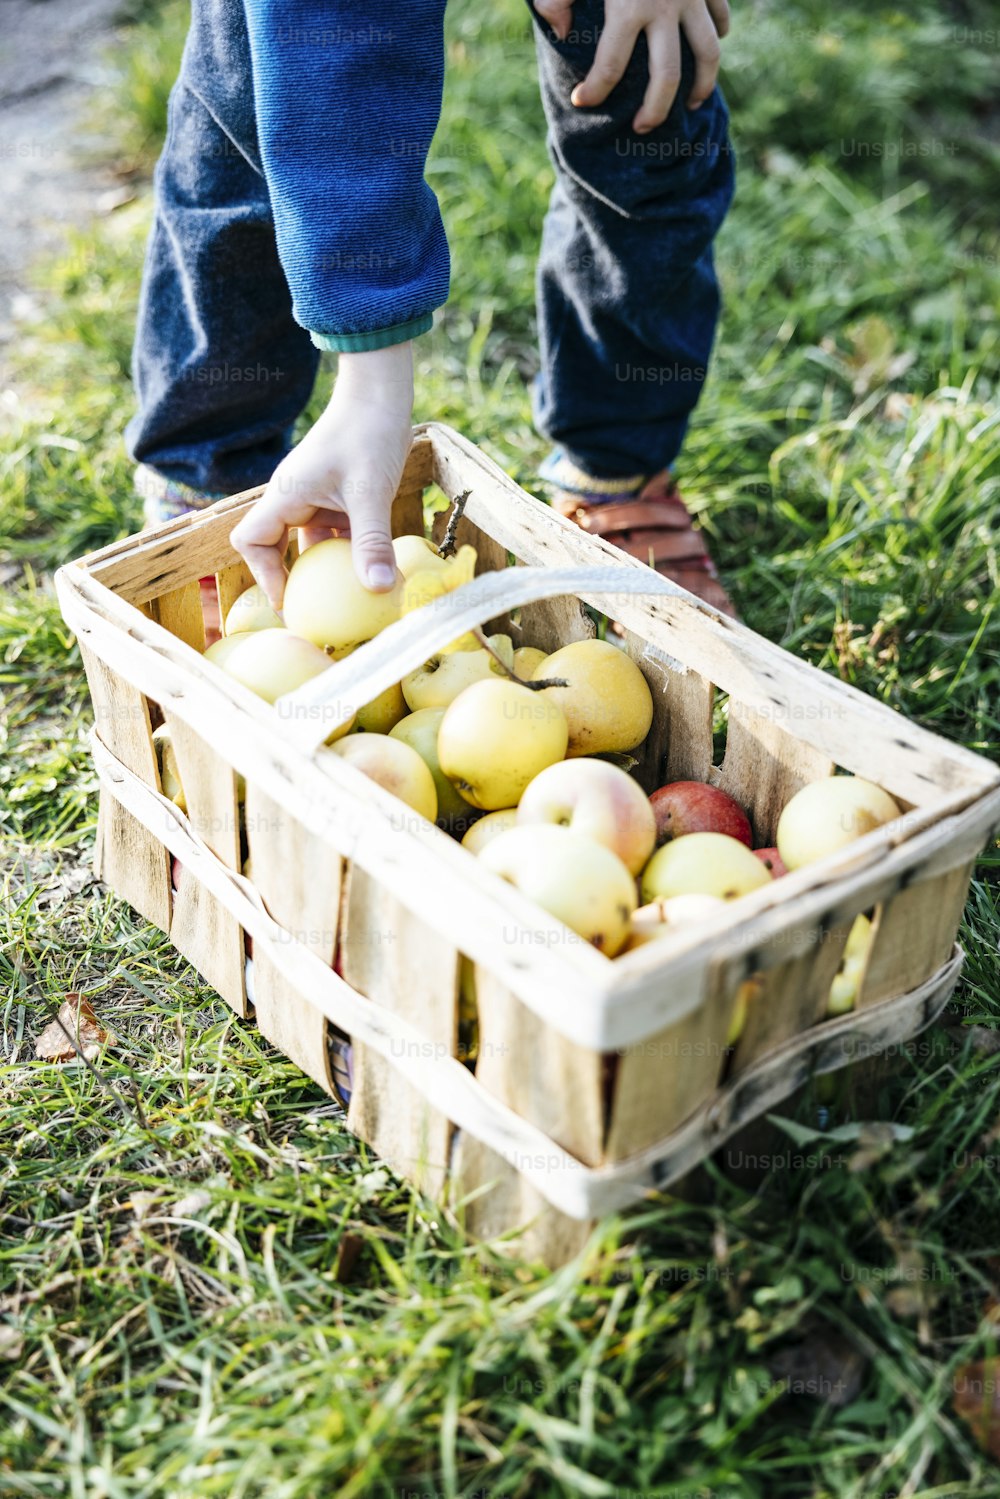 Un bambino che raccoglie mele da un cesto nell'erba